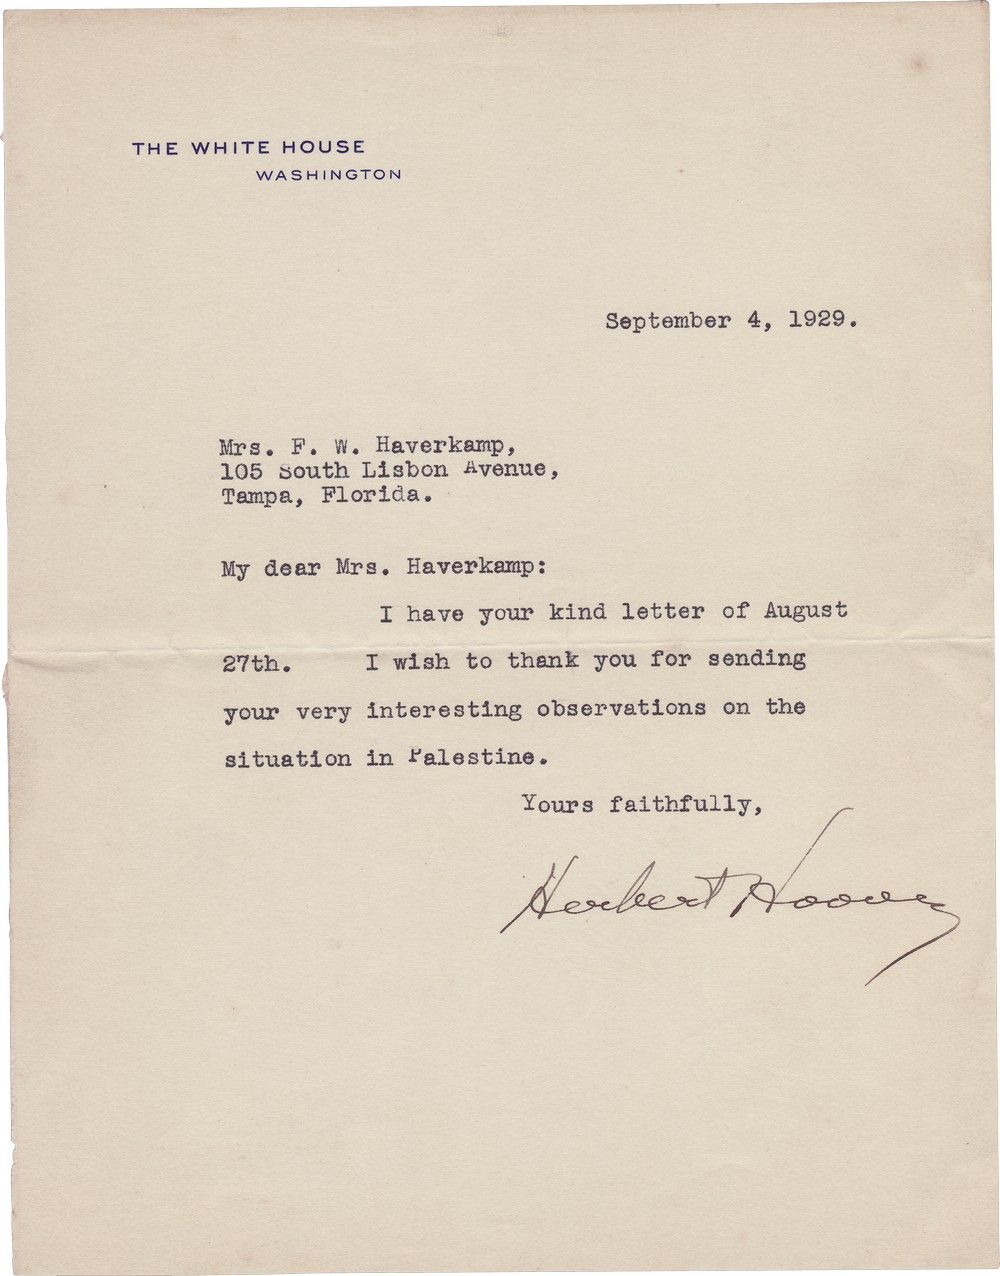 President Herbert Hoover Silent on 1929 Hebron Massacre